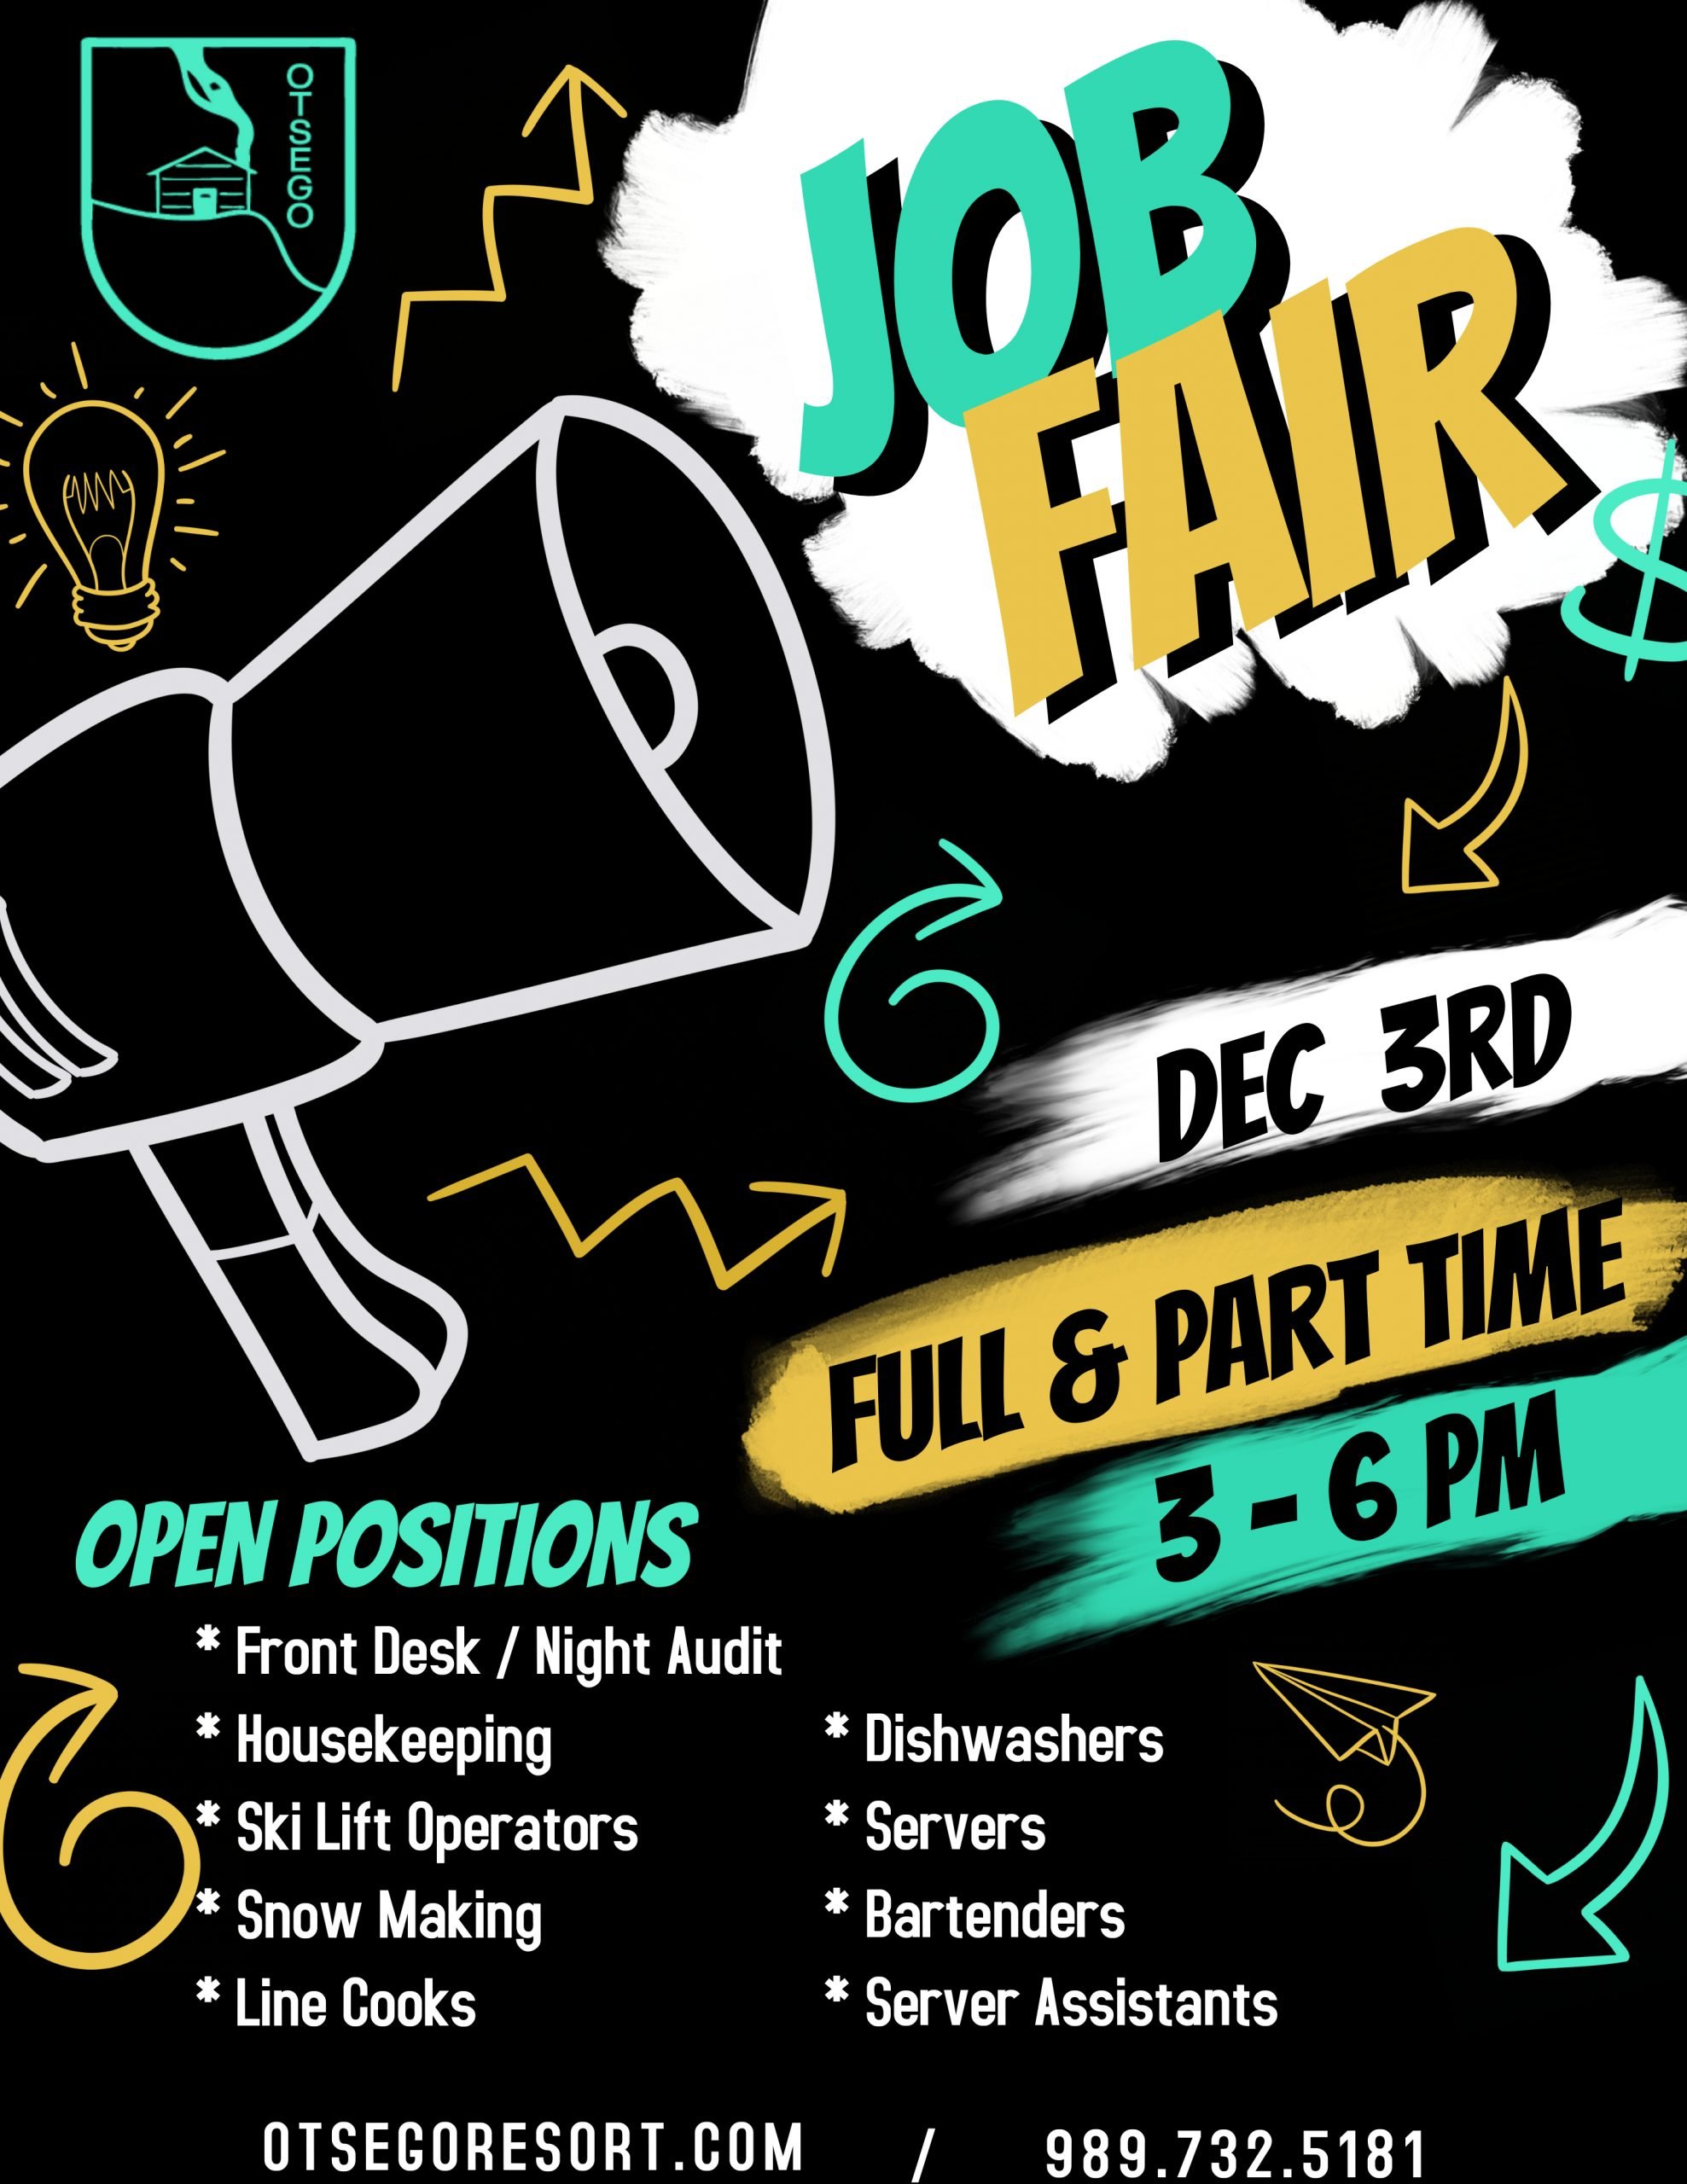 December 3rd Job Fair Flyer